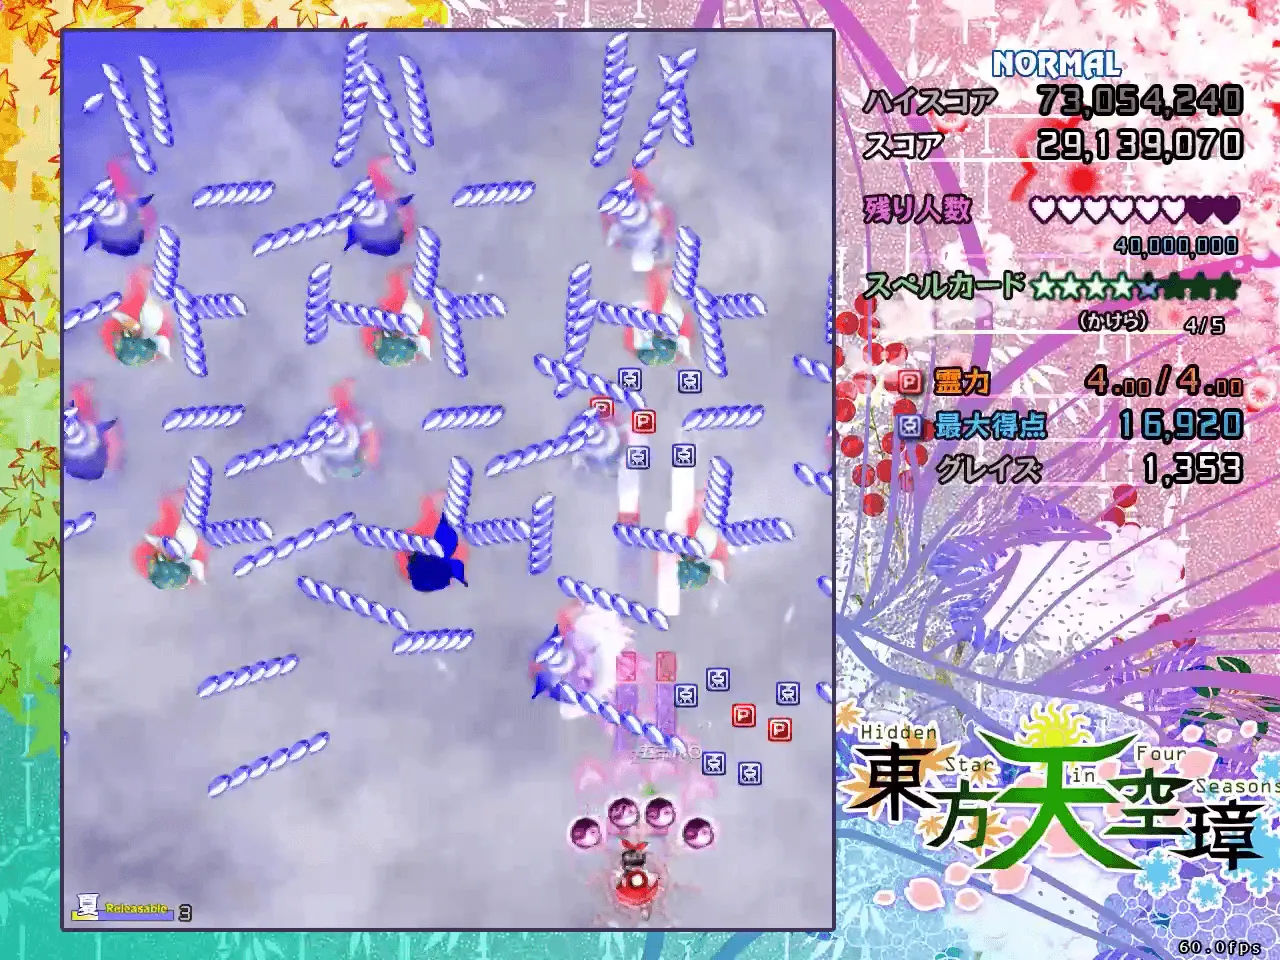 『東方天空璋』のゲーム画面